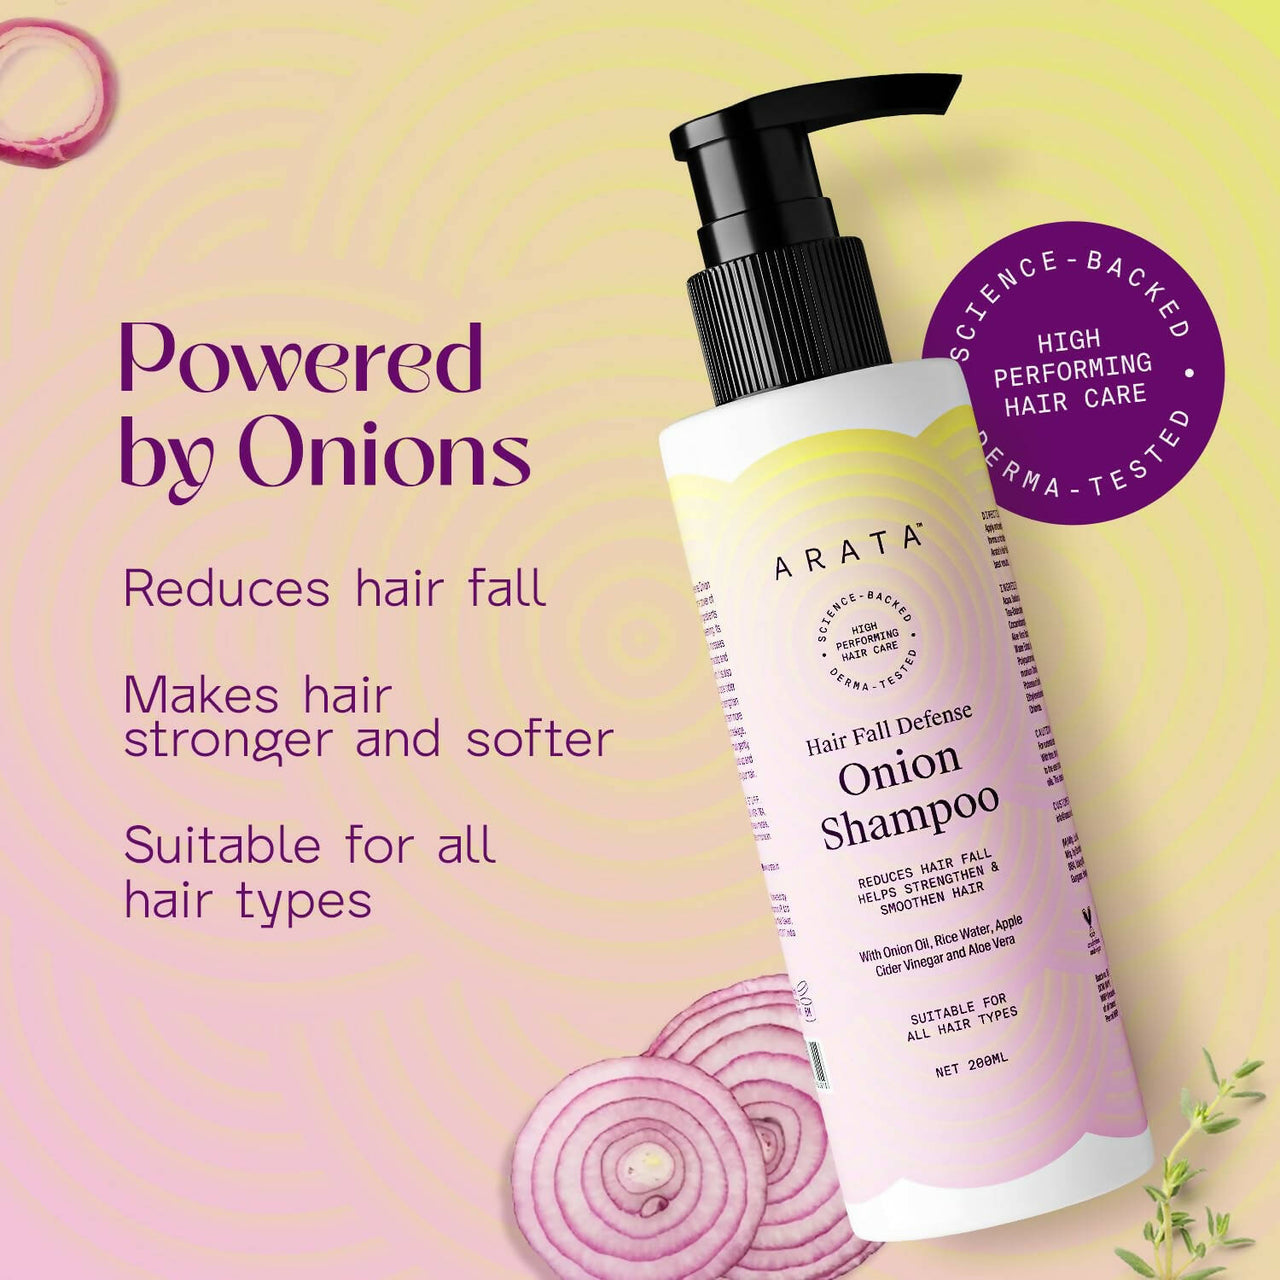 Arata Hair Fall Defense Onion Shampoo - Distacart